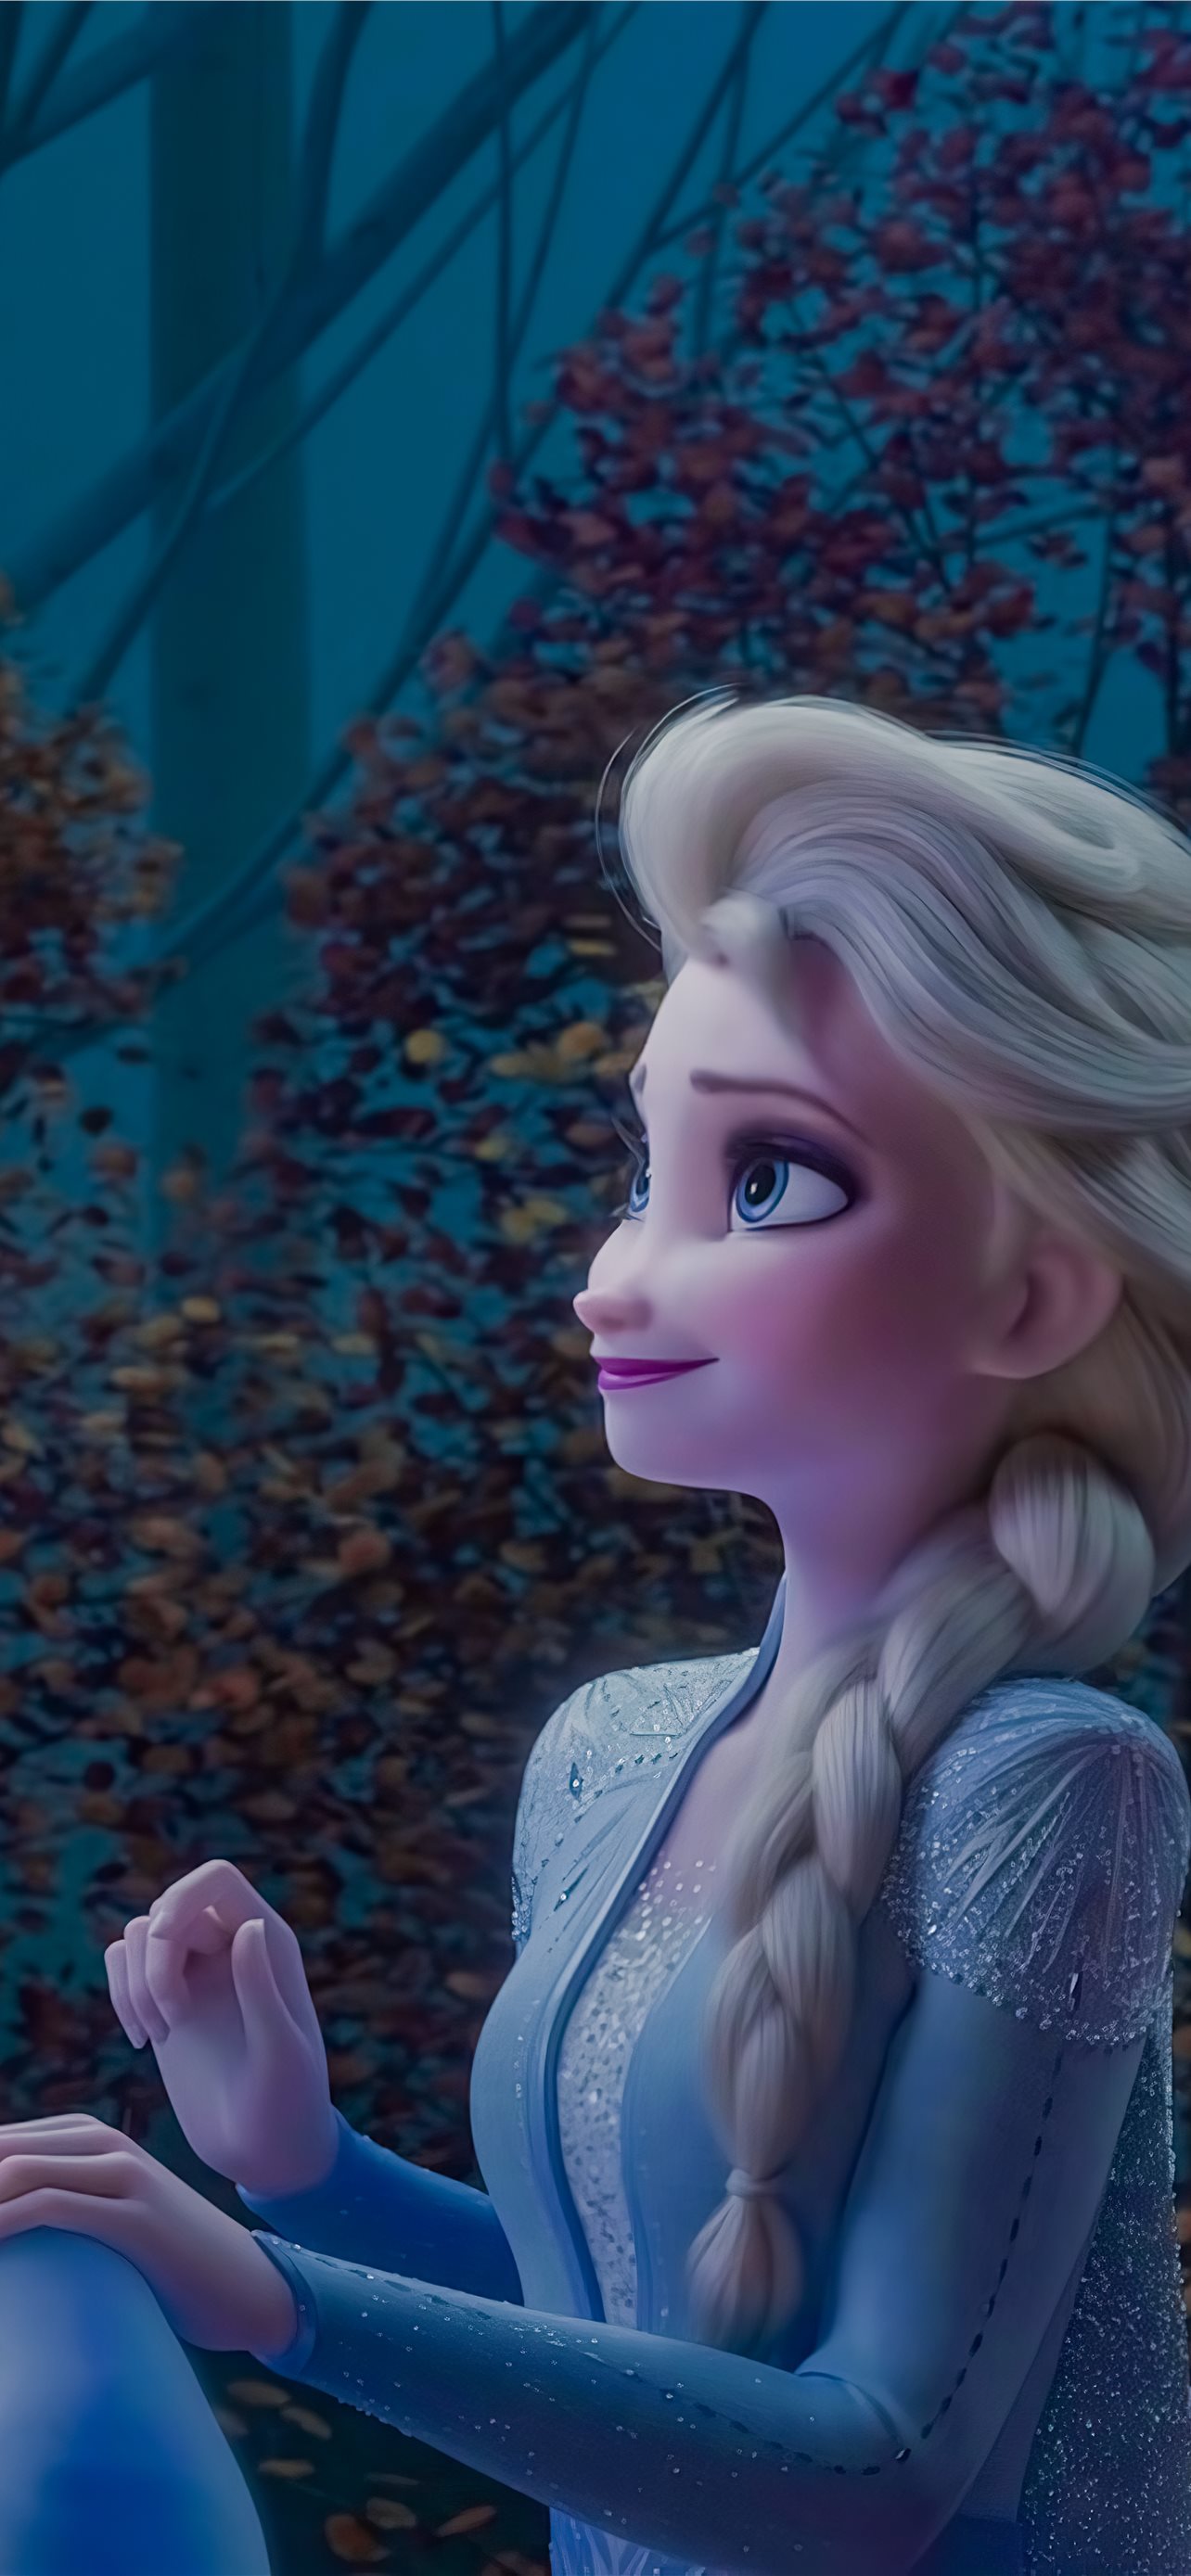 Số phận của Elsa trong phần 2 phim hoạt hình 'Frozen'